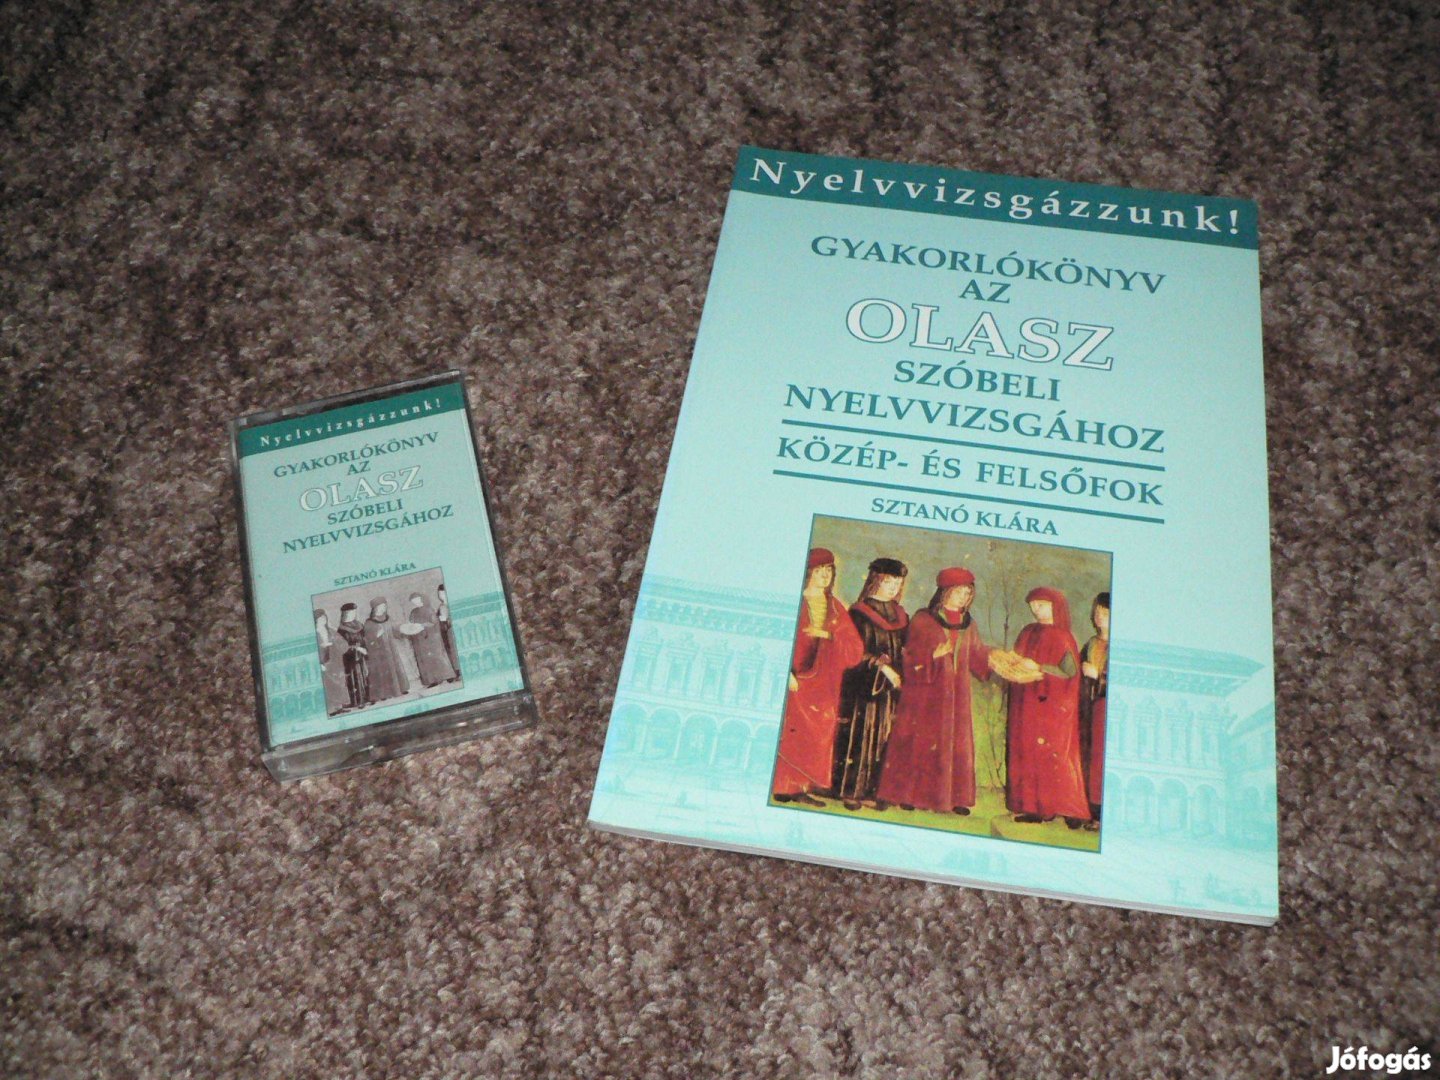 Gyakorlókönyv az olasz szóbeli nyelvvizsgához + a könyv MP3 hanganyaga